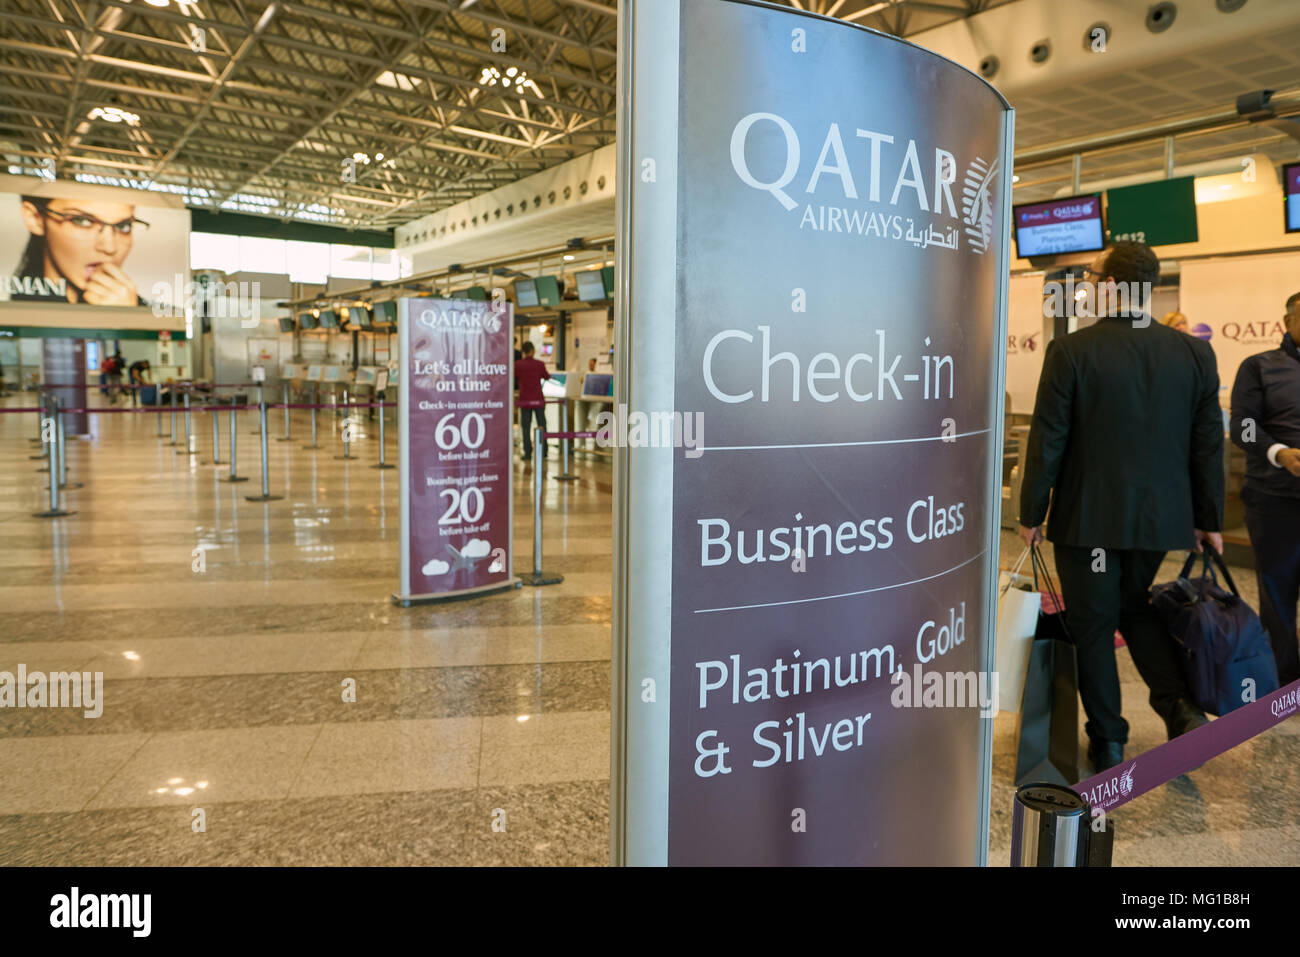 Aeroporto di MILANO MALPENSA, Italia - circa novembre, 2017: Qatar Airways area check-in all'aeroporto di Milano Malpensa Terminal 1. Foto Stock